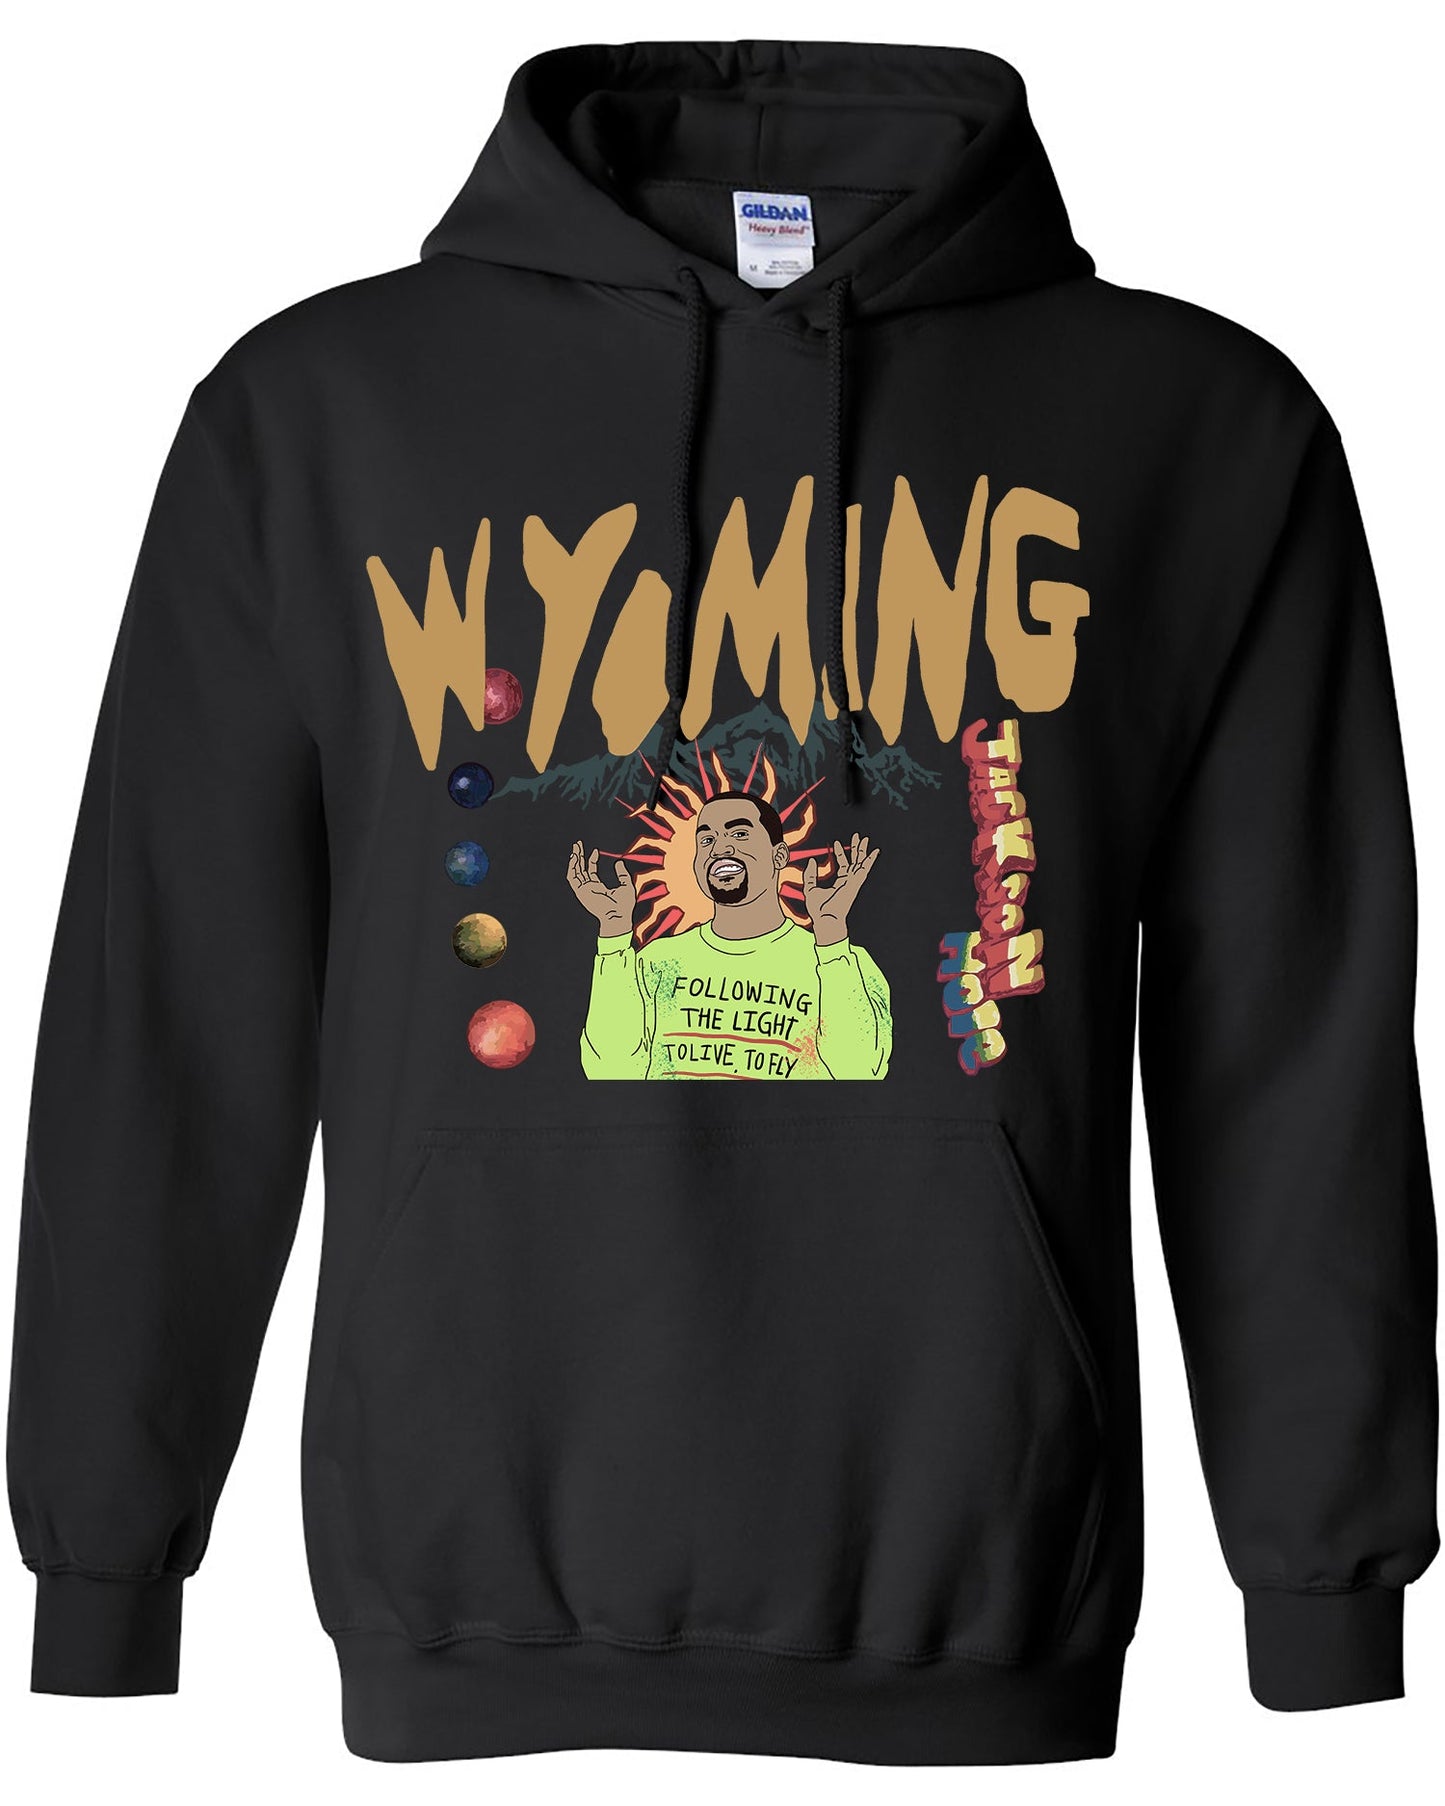 Kanye West Hoodie - Wyoming